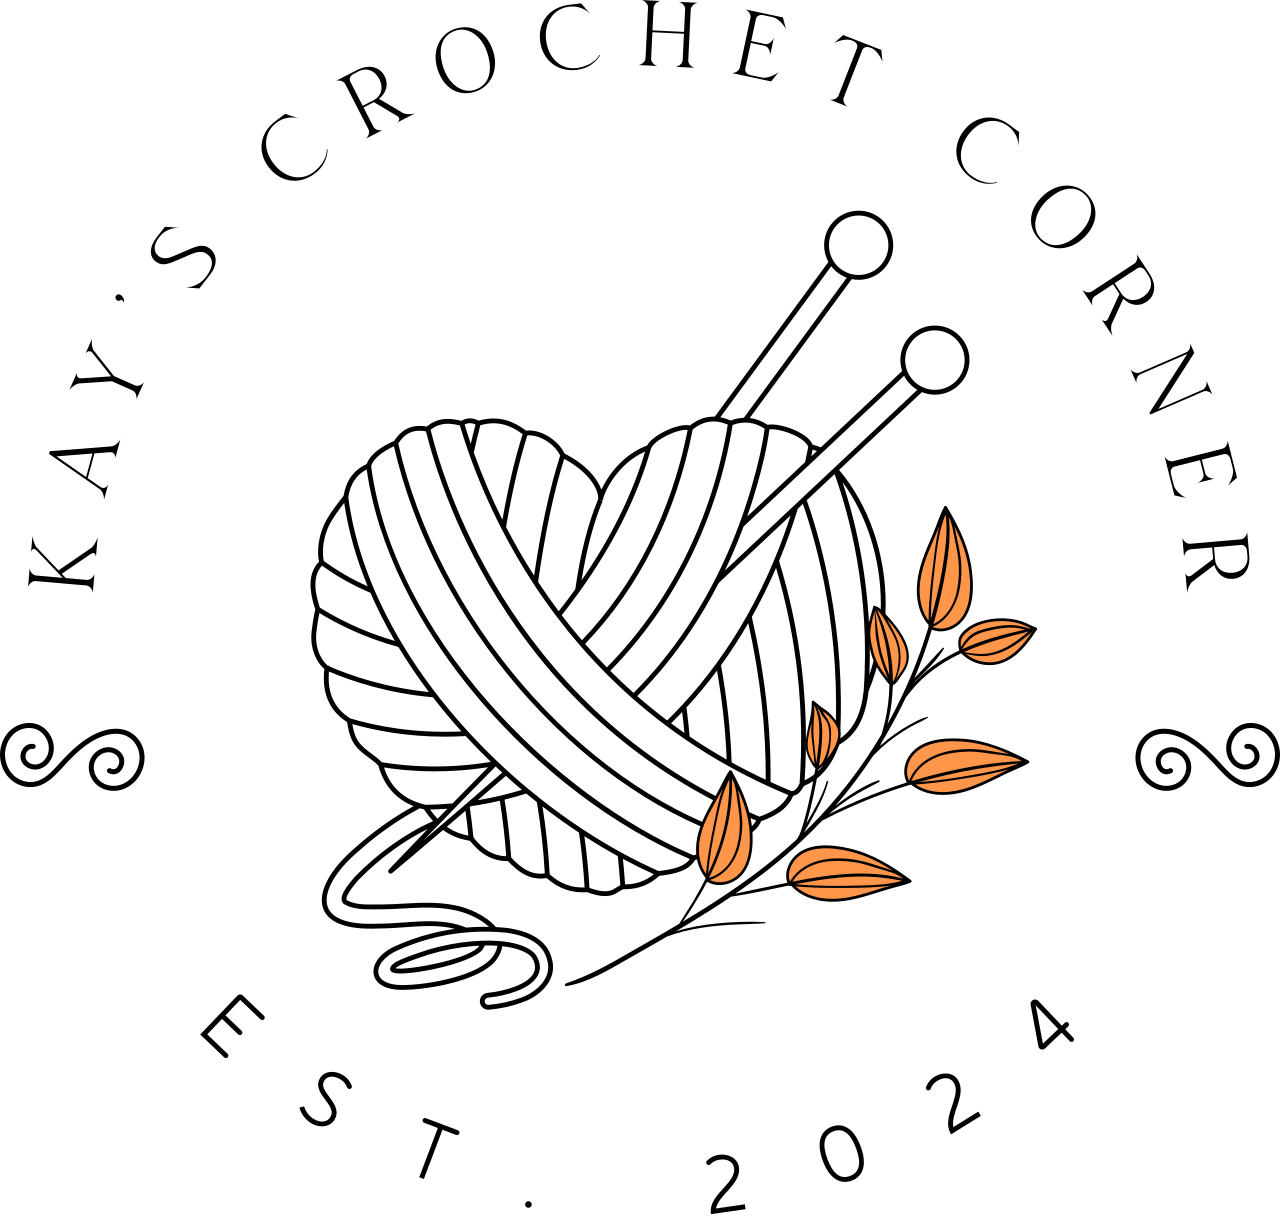 KAY’S CROCHET CORNER's logo